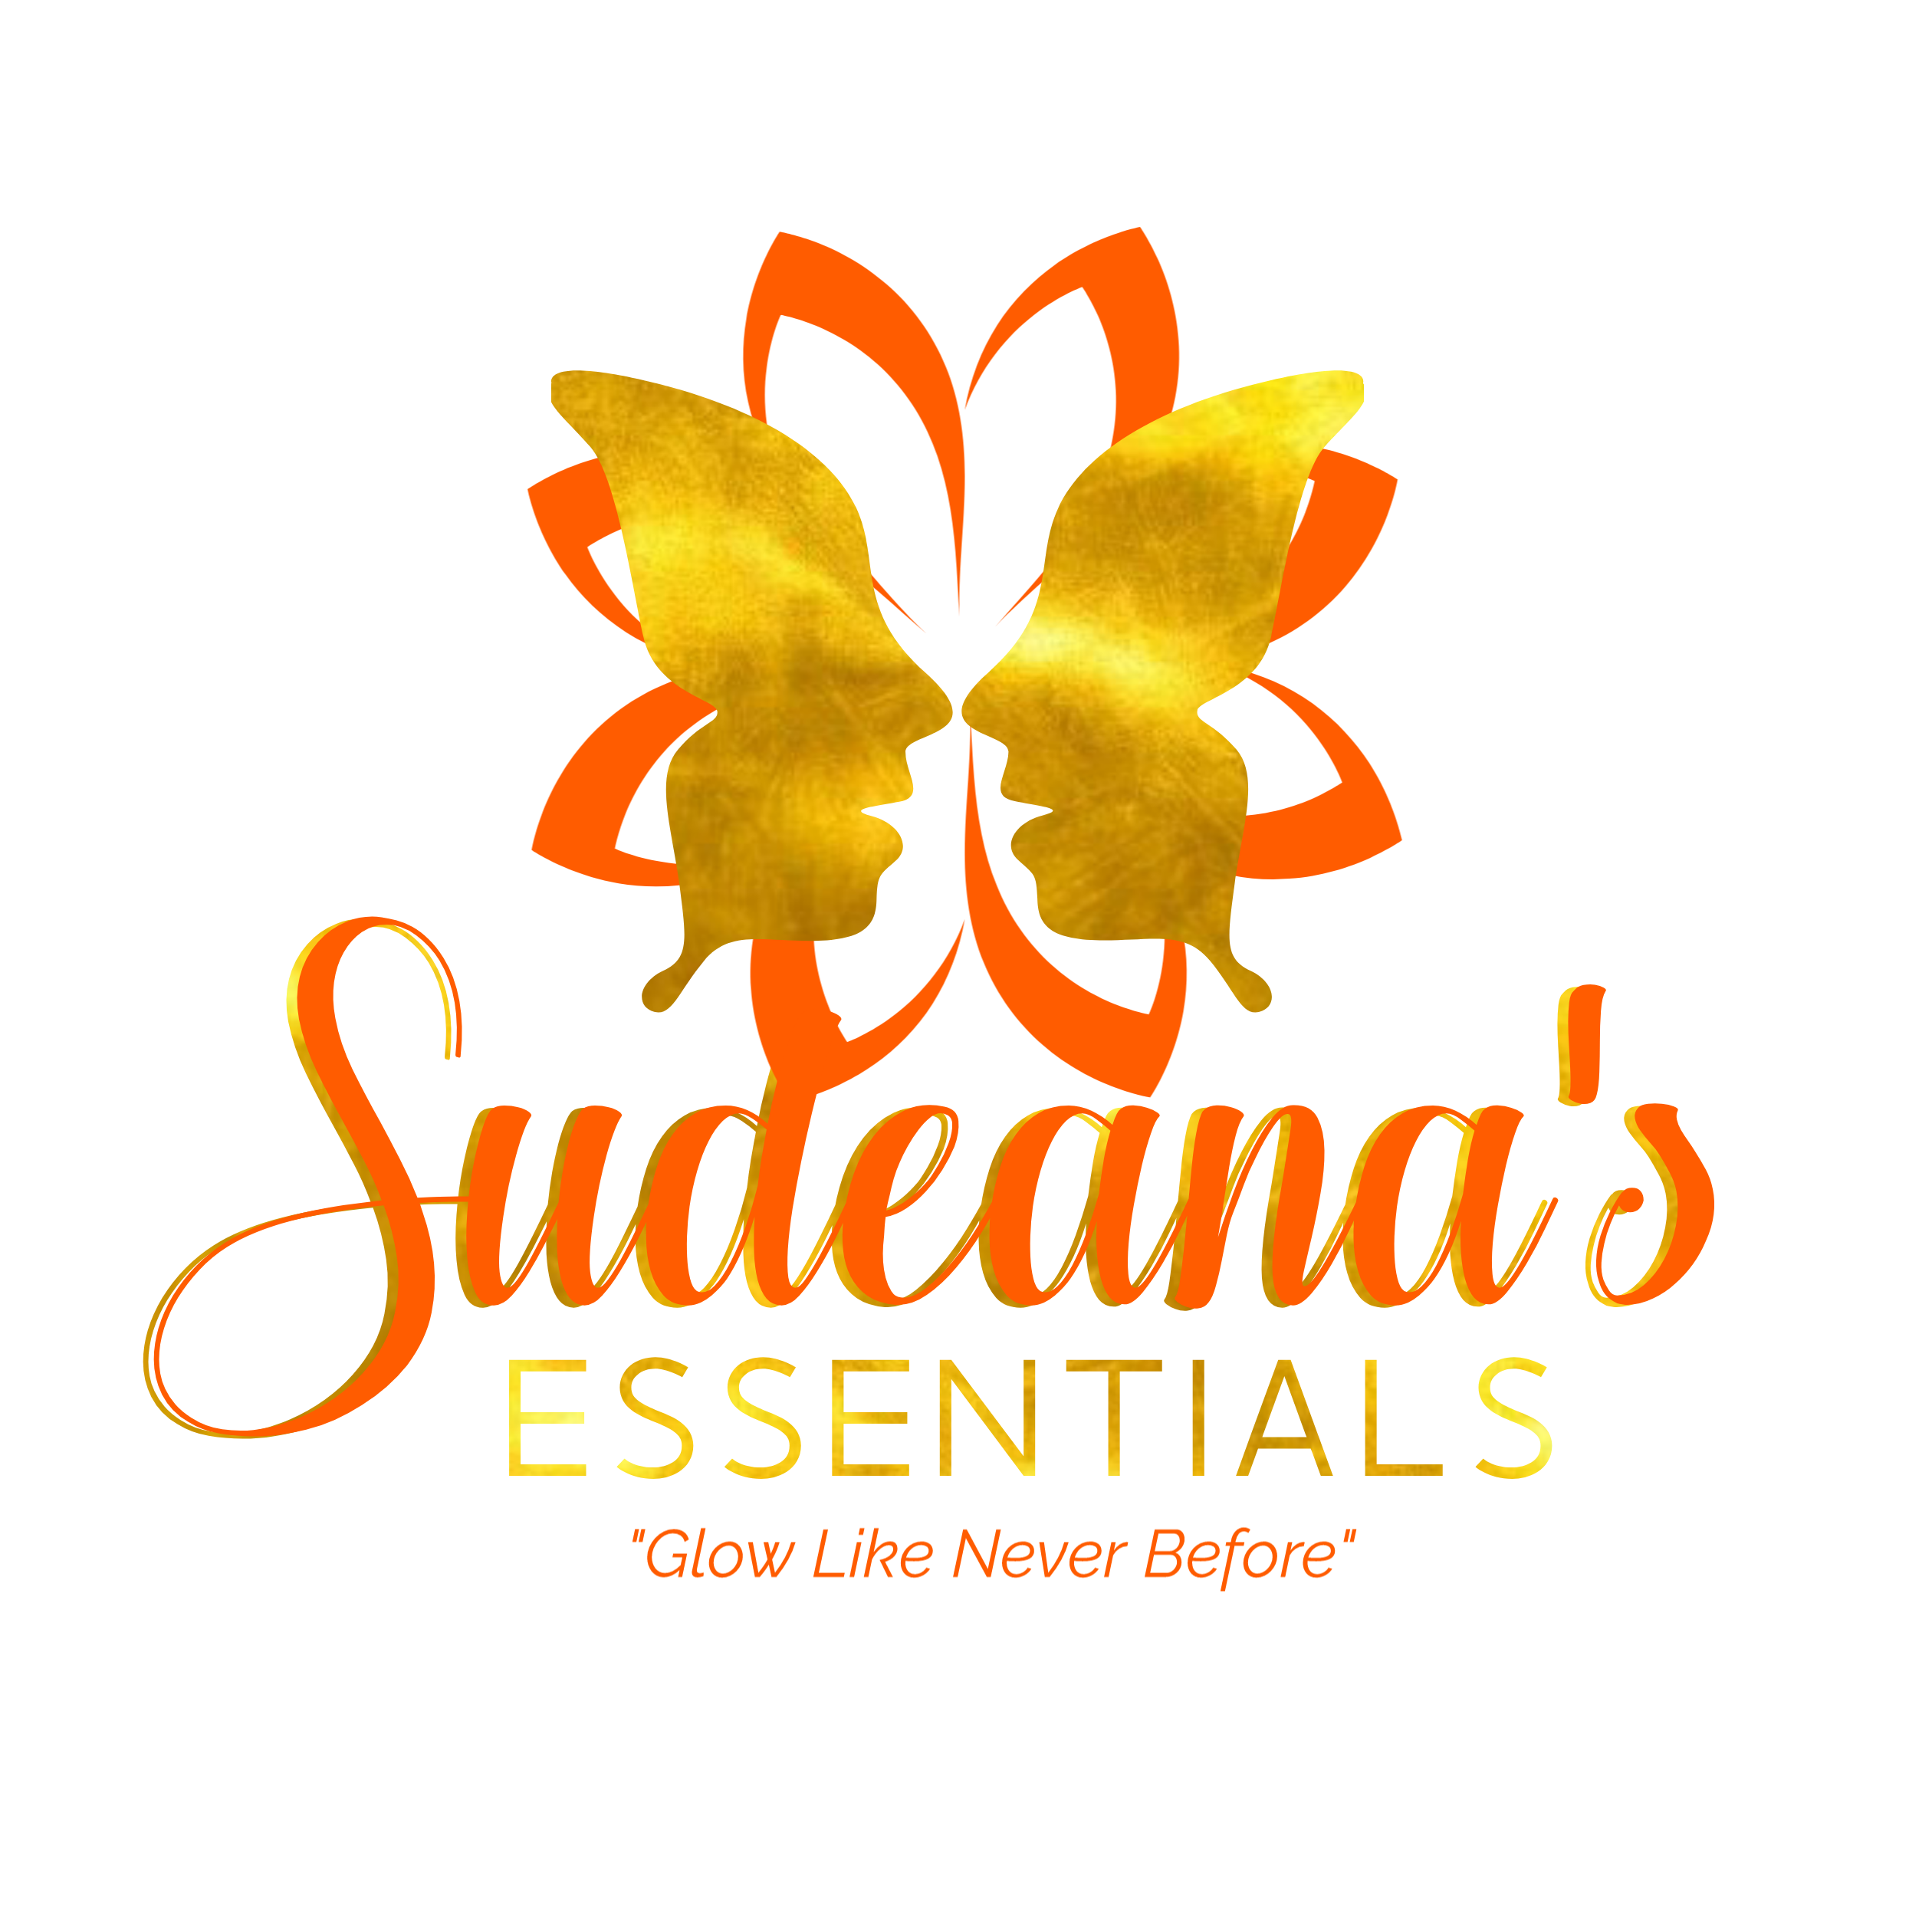 Sudeana's Essentials 